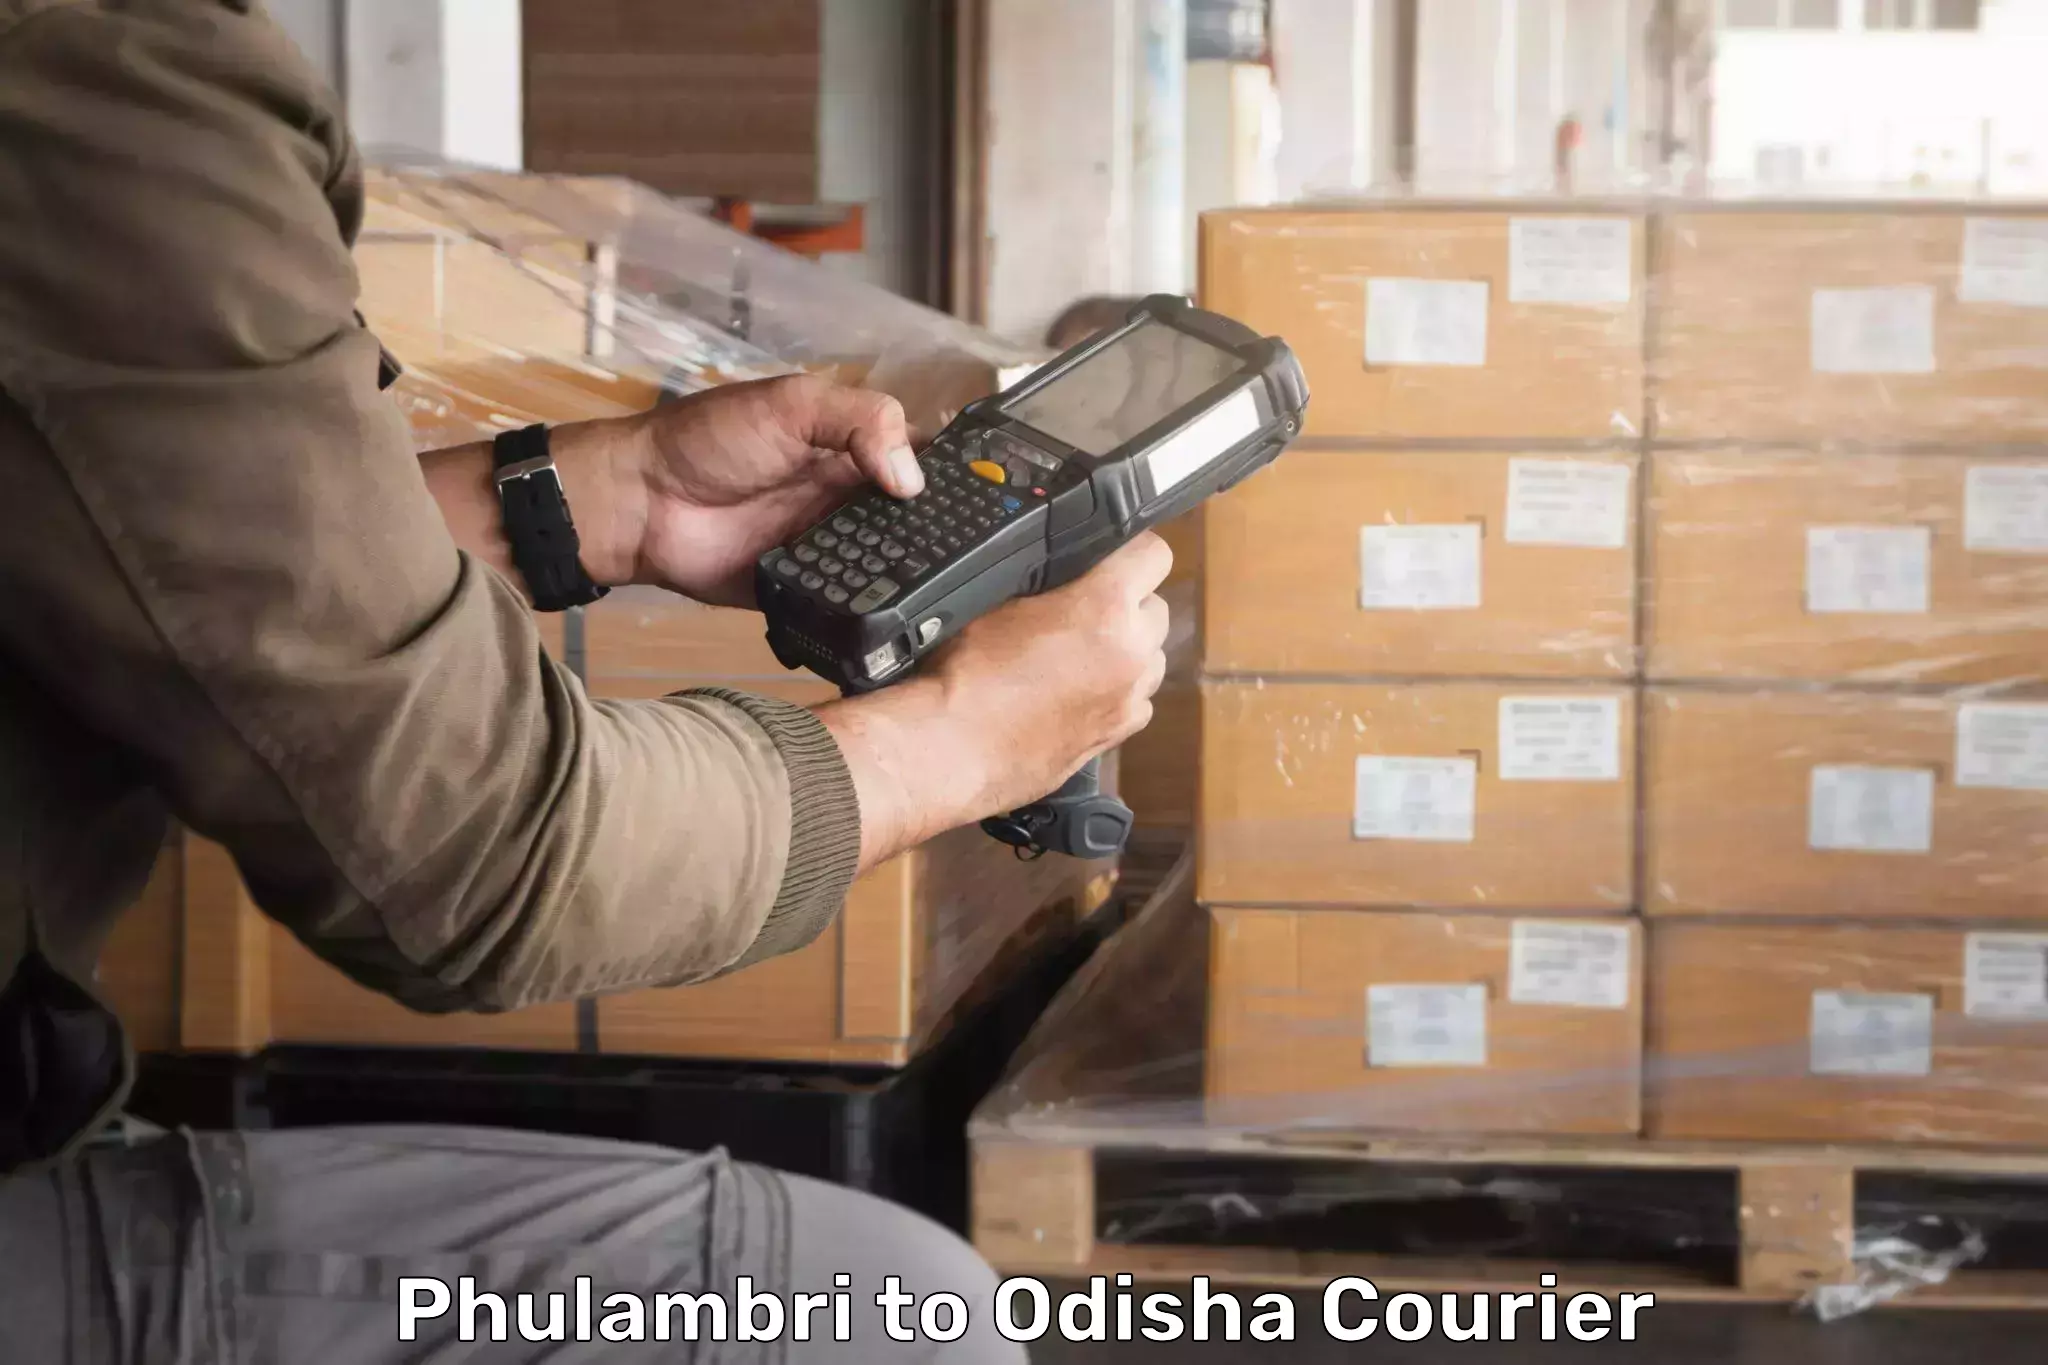 Advanced shipping technology Phulambri to Pipili